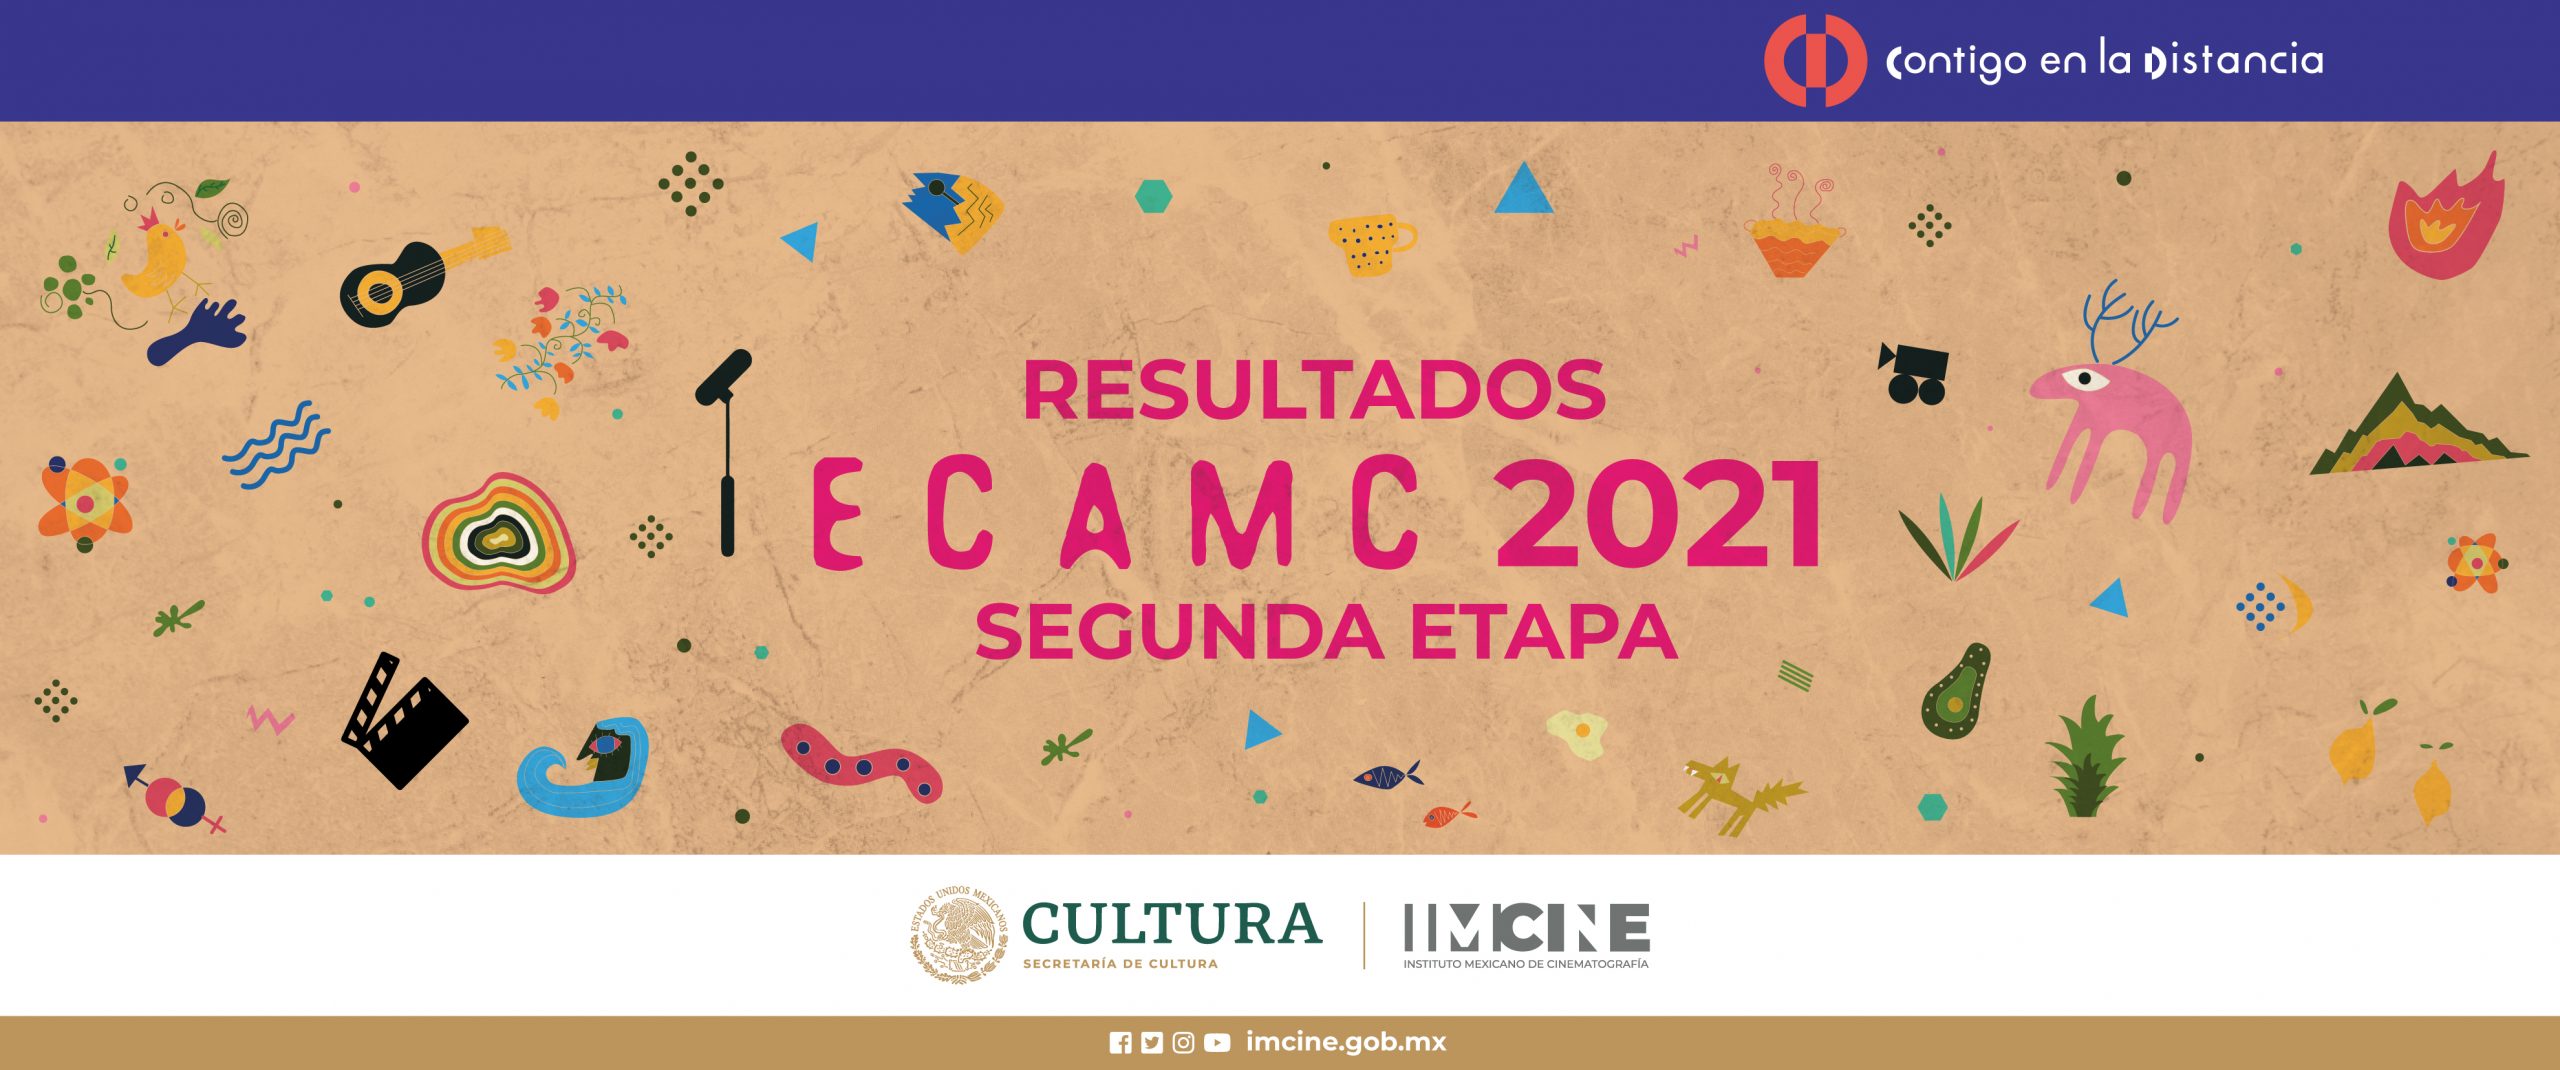 El Imcine da a conocer los resultados de la segunda etapa de la convocatoria ECAMC 2021